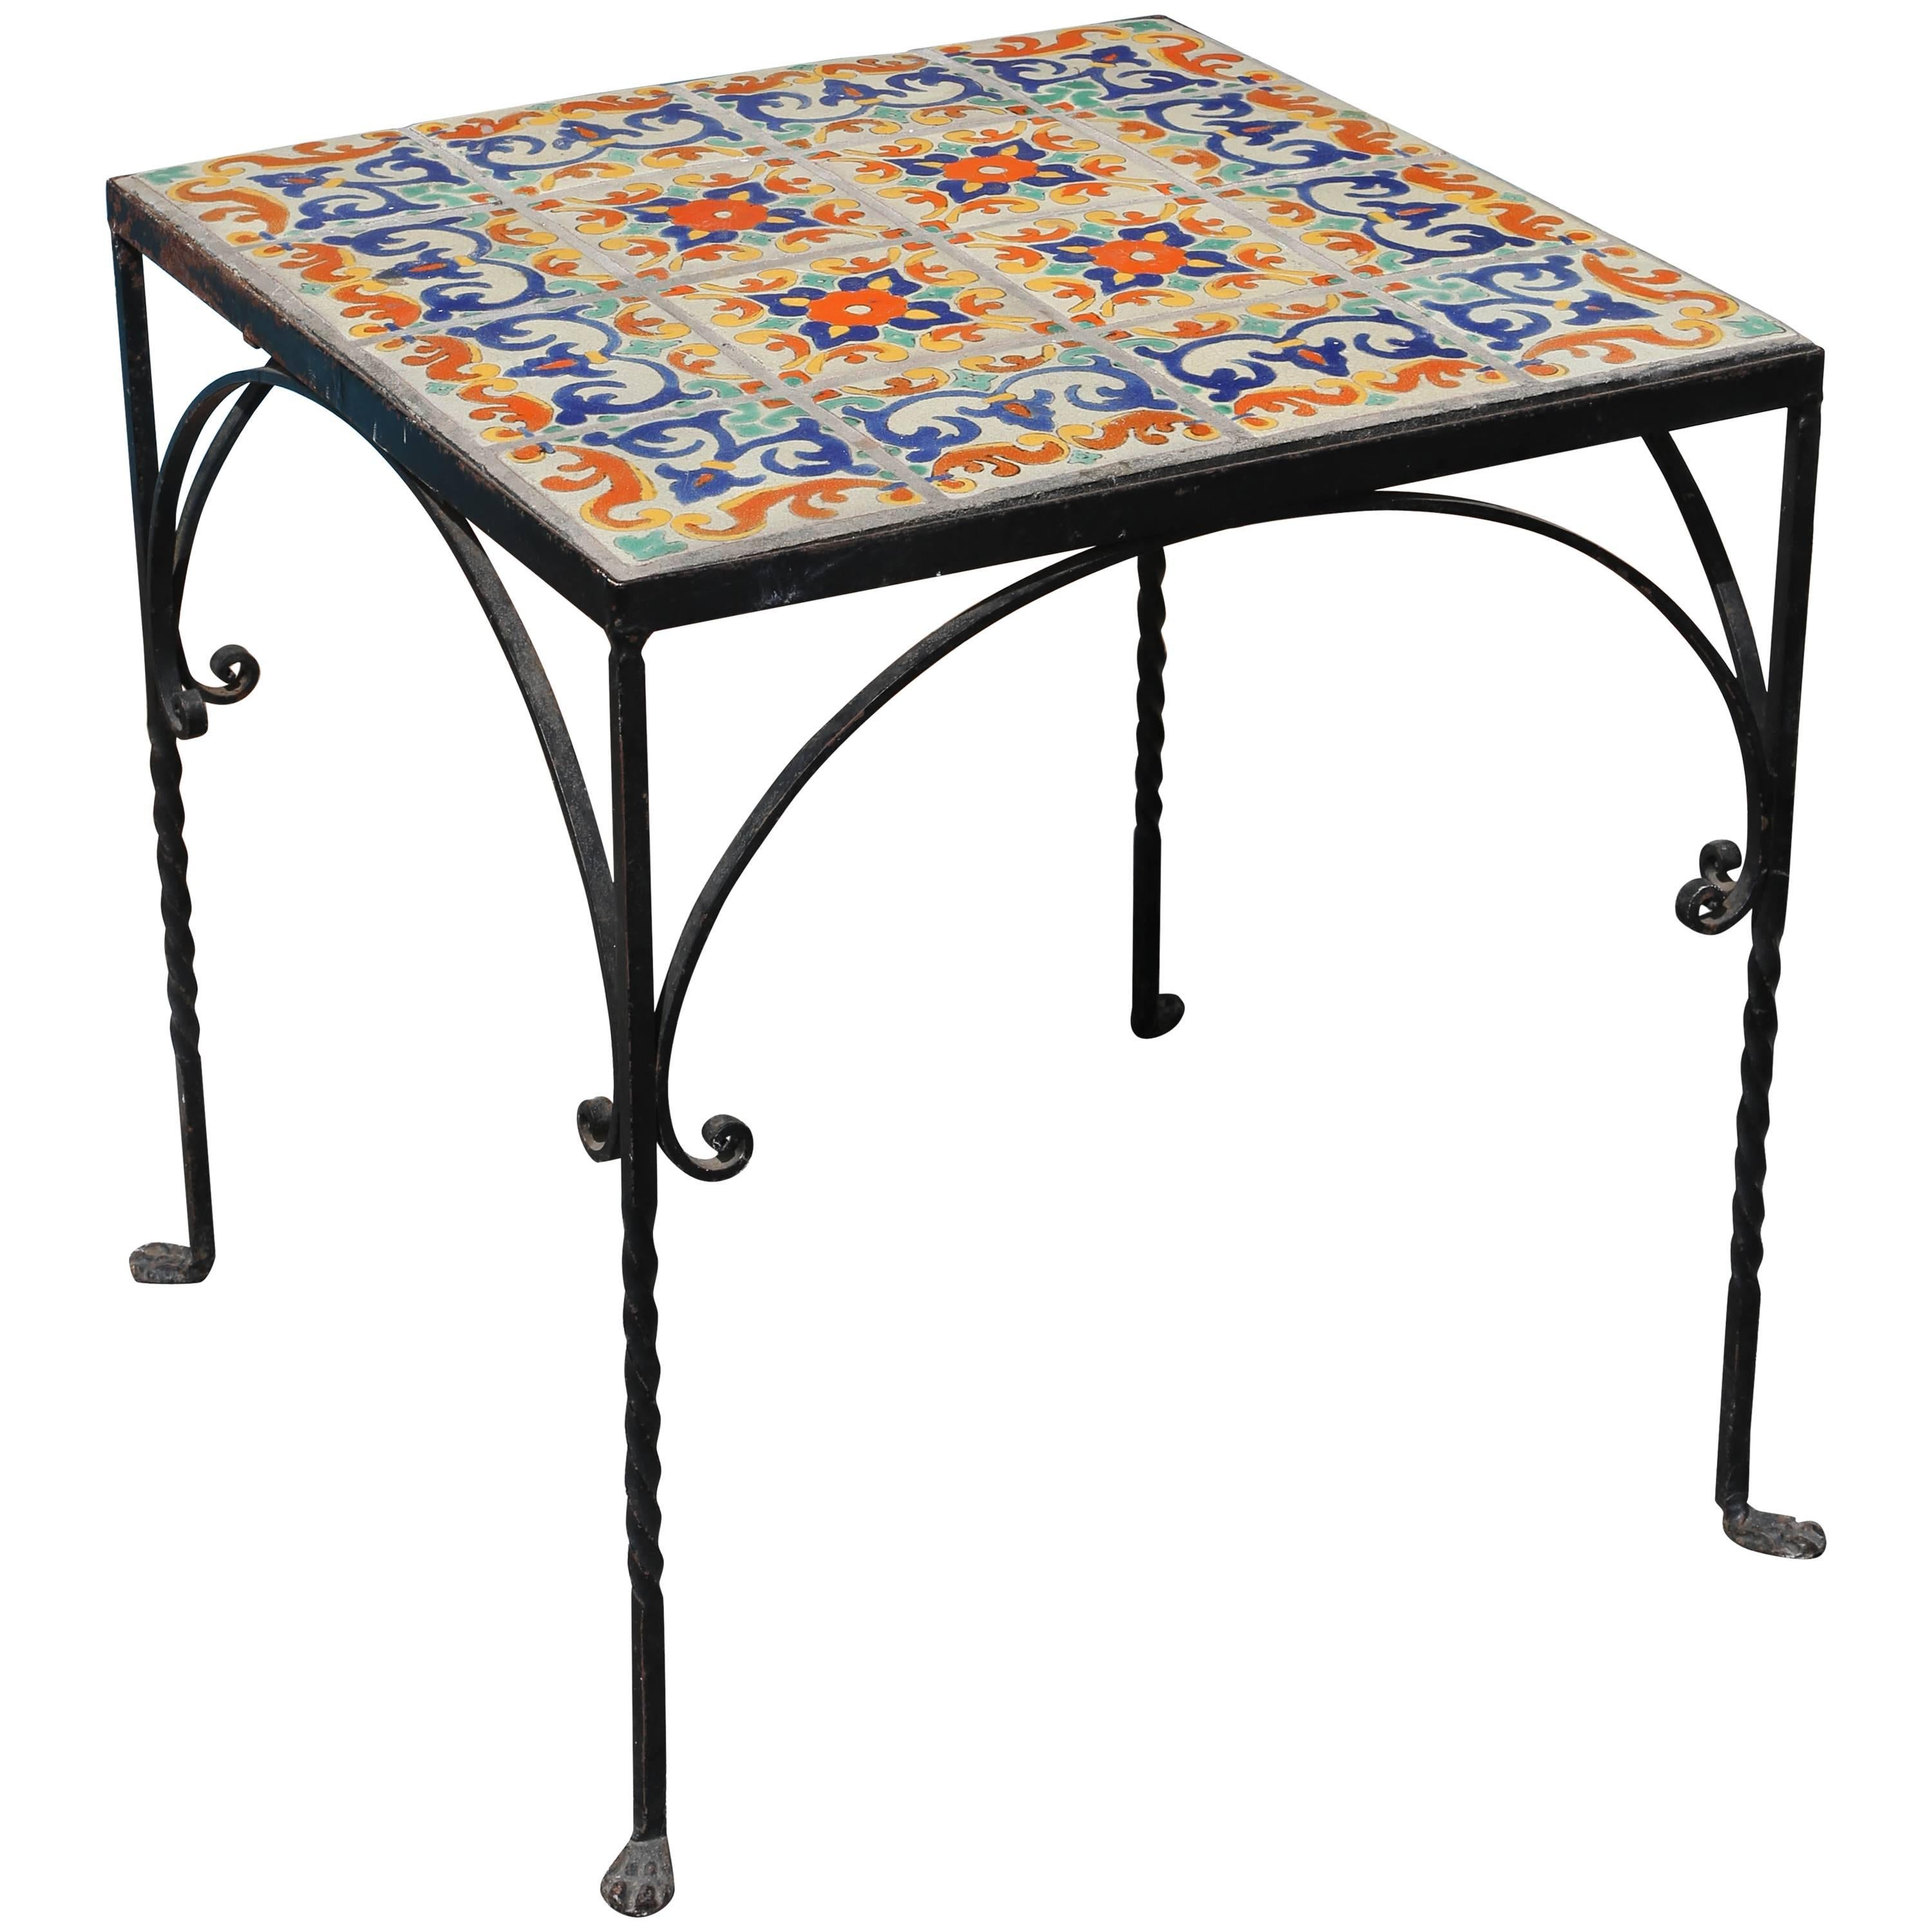 Large Mizner Era Tile Top Table